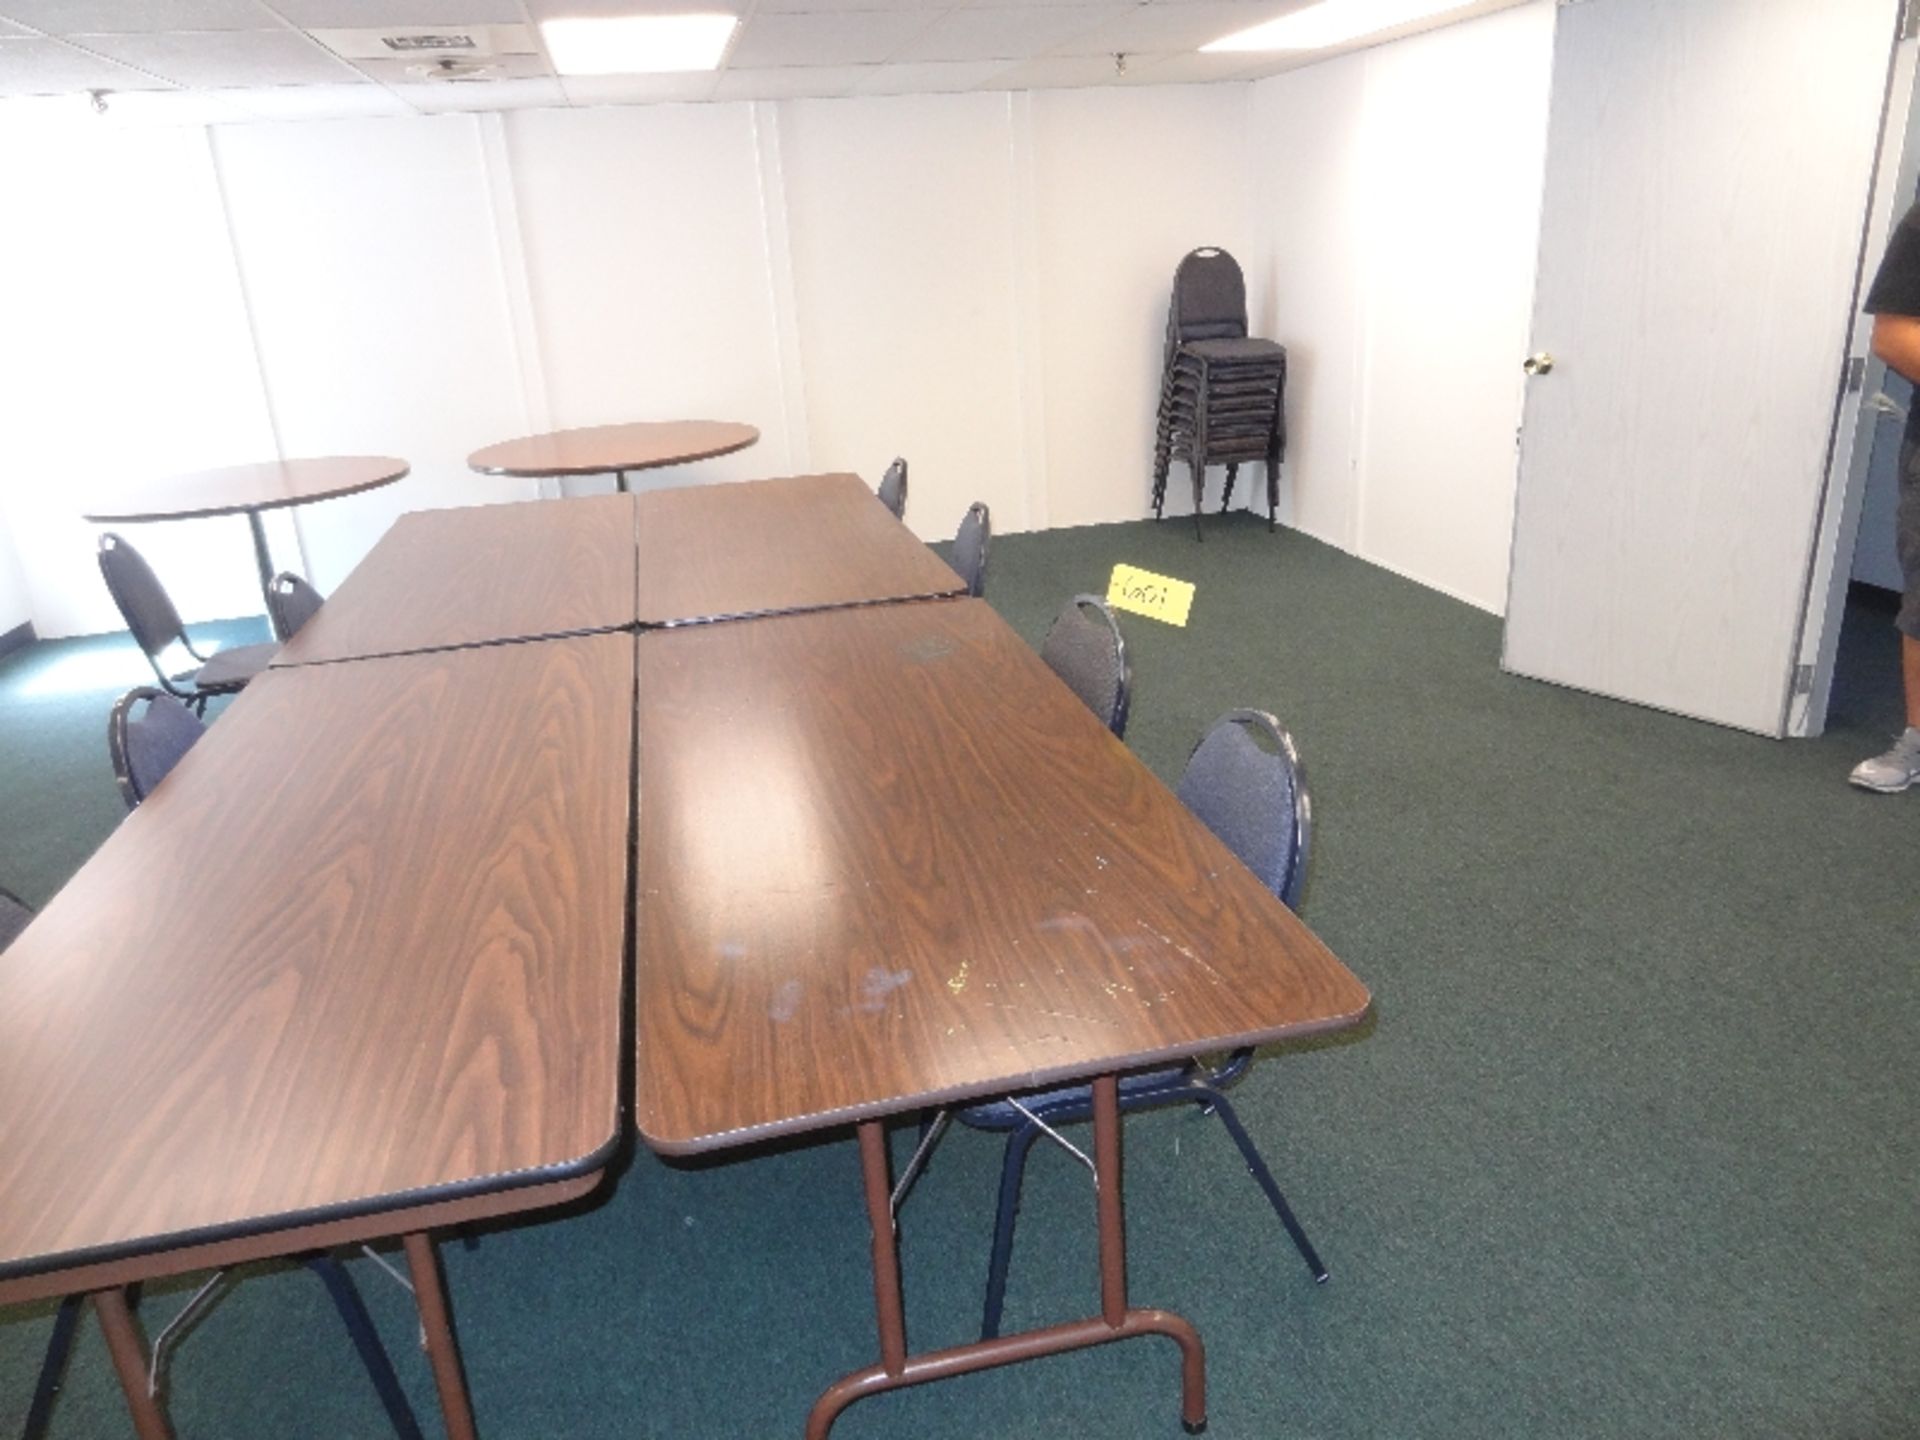 Contents of Meeting Room - Bild 2 aus 2